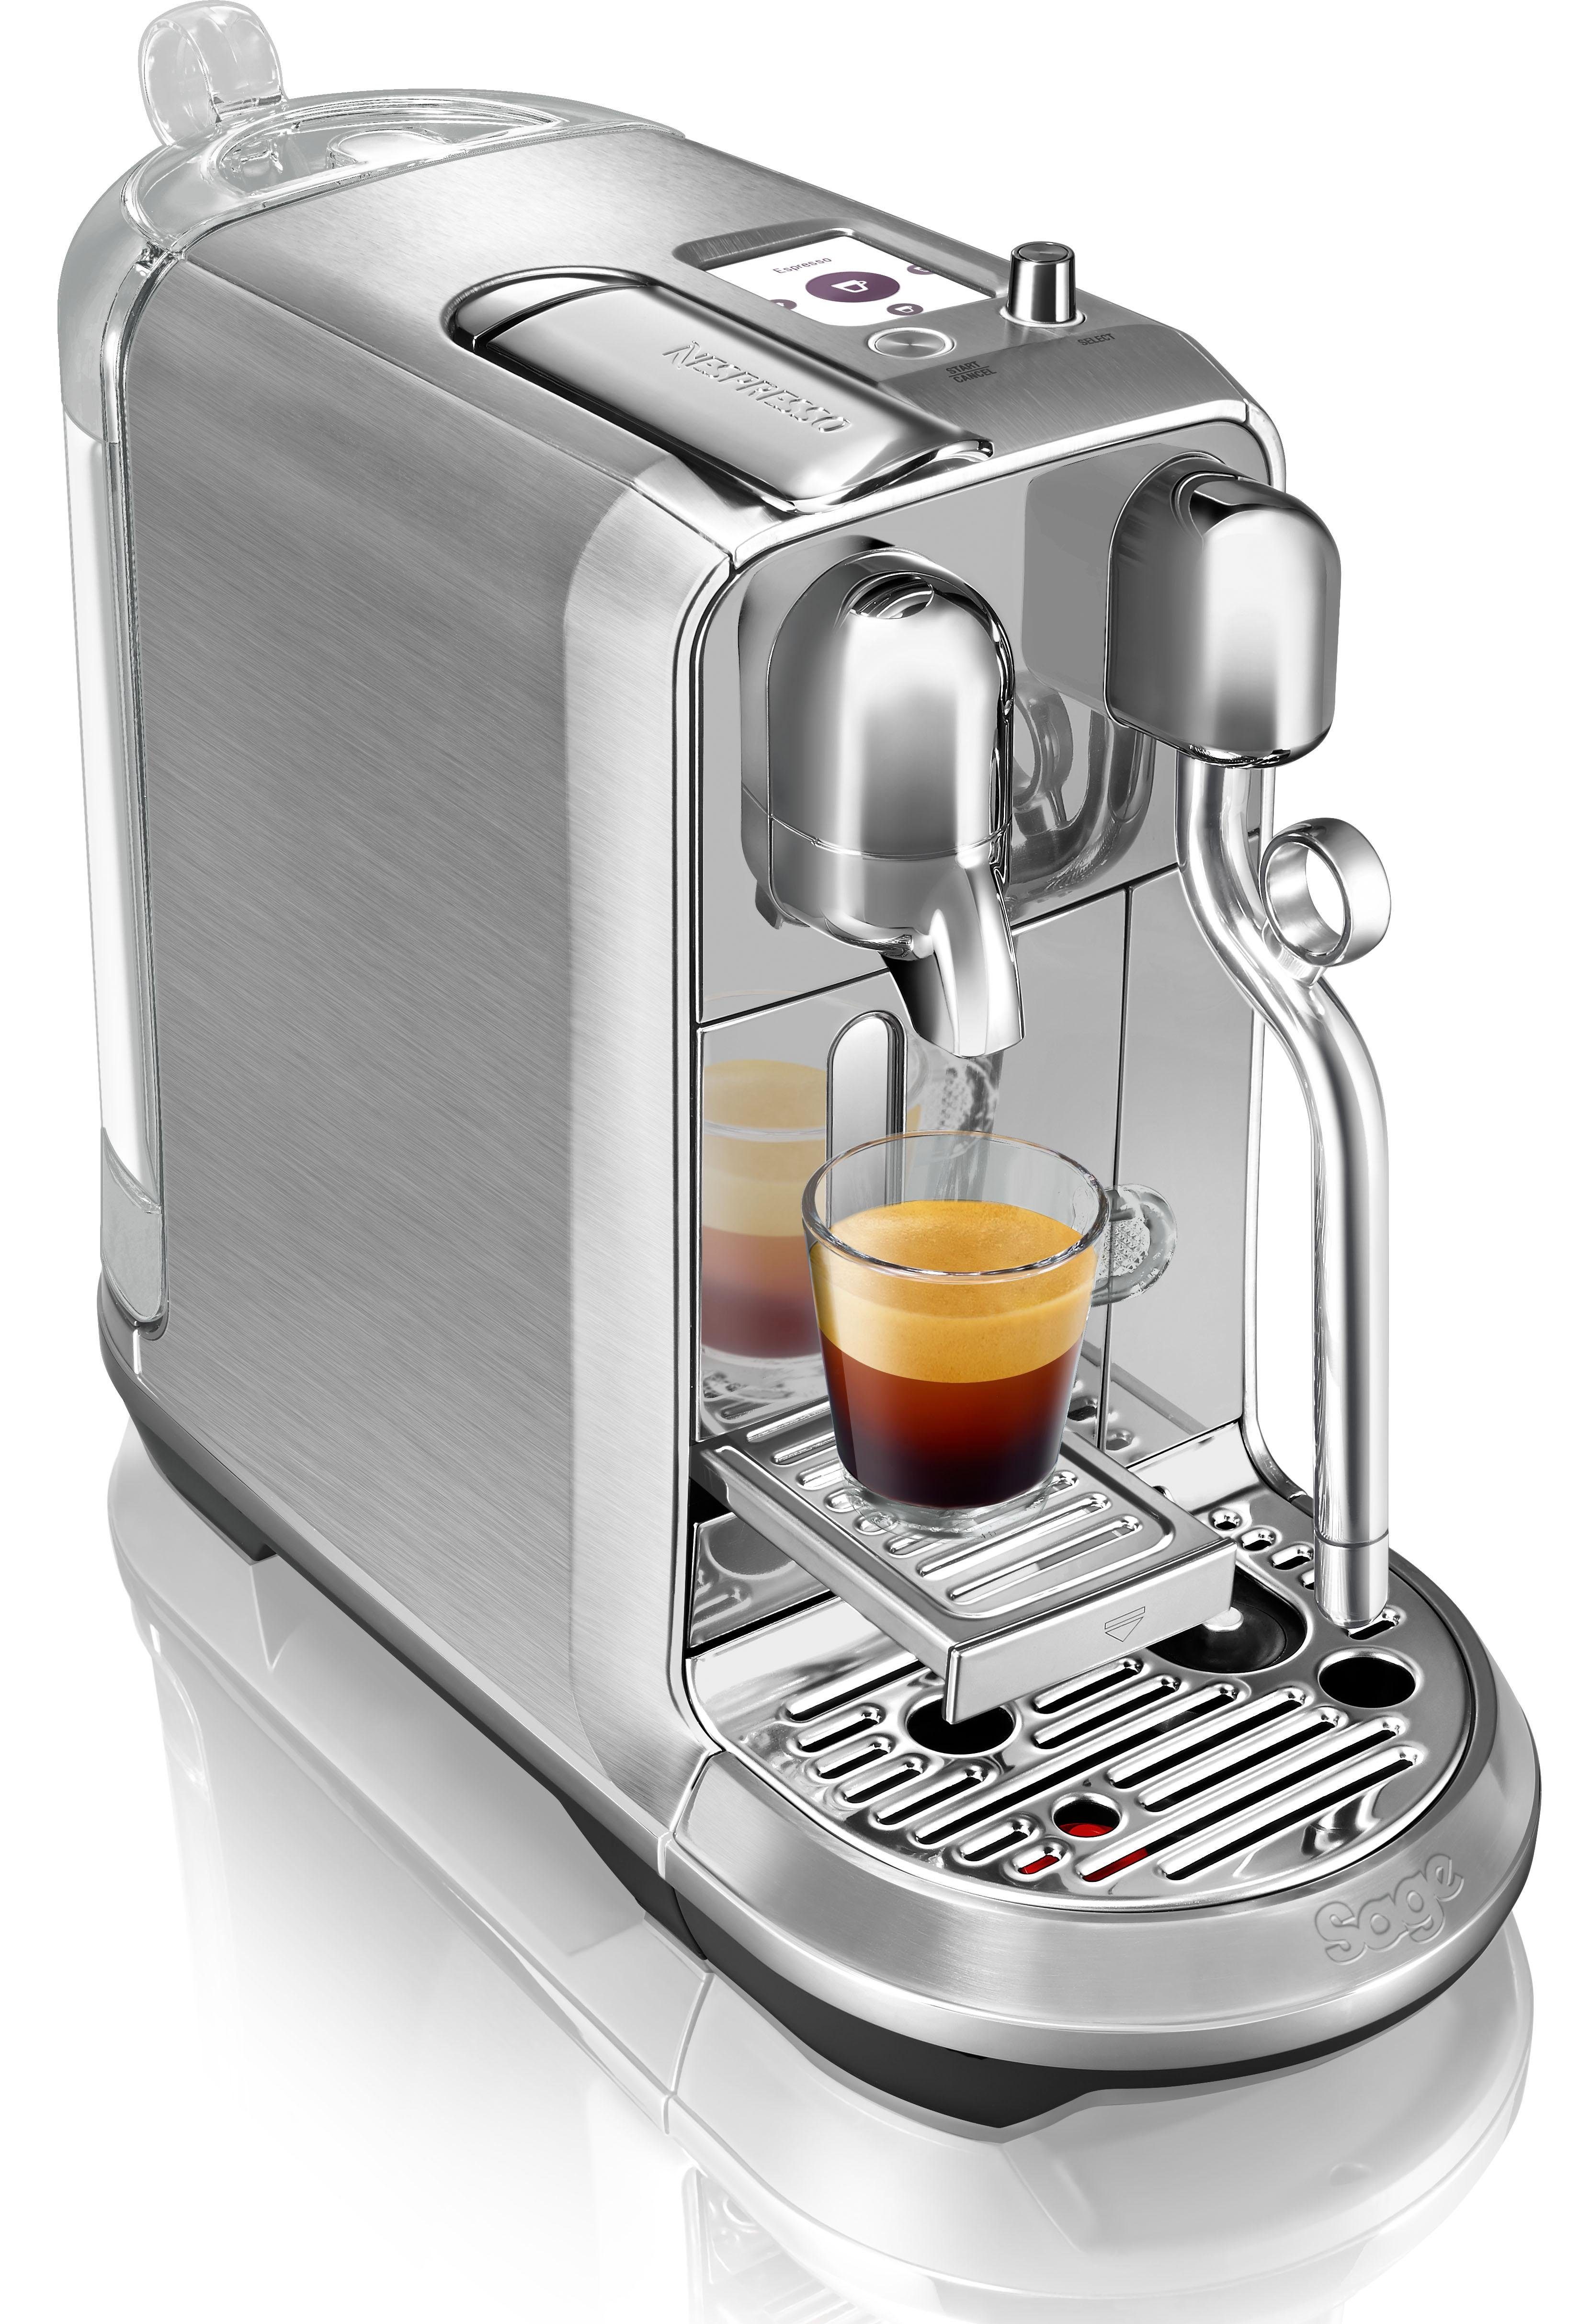 14 Edelstahl-Milchkanne, Kapselmaschine SNE800 Creatista inkl. Nespresso mit Plus Willkommenspaket Kapseln mit